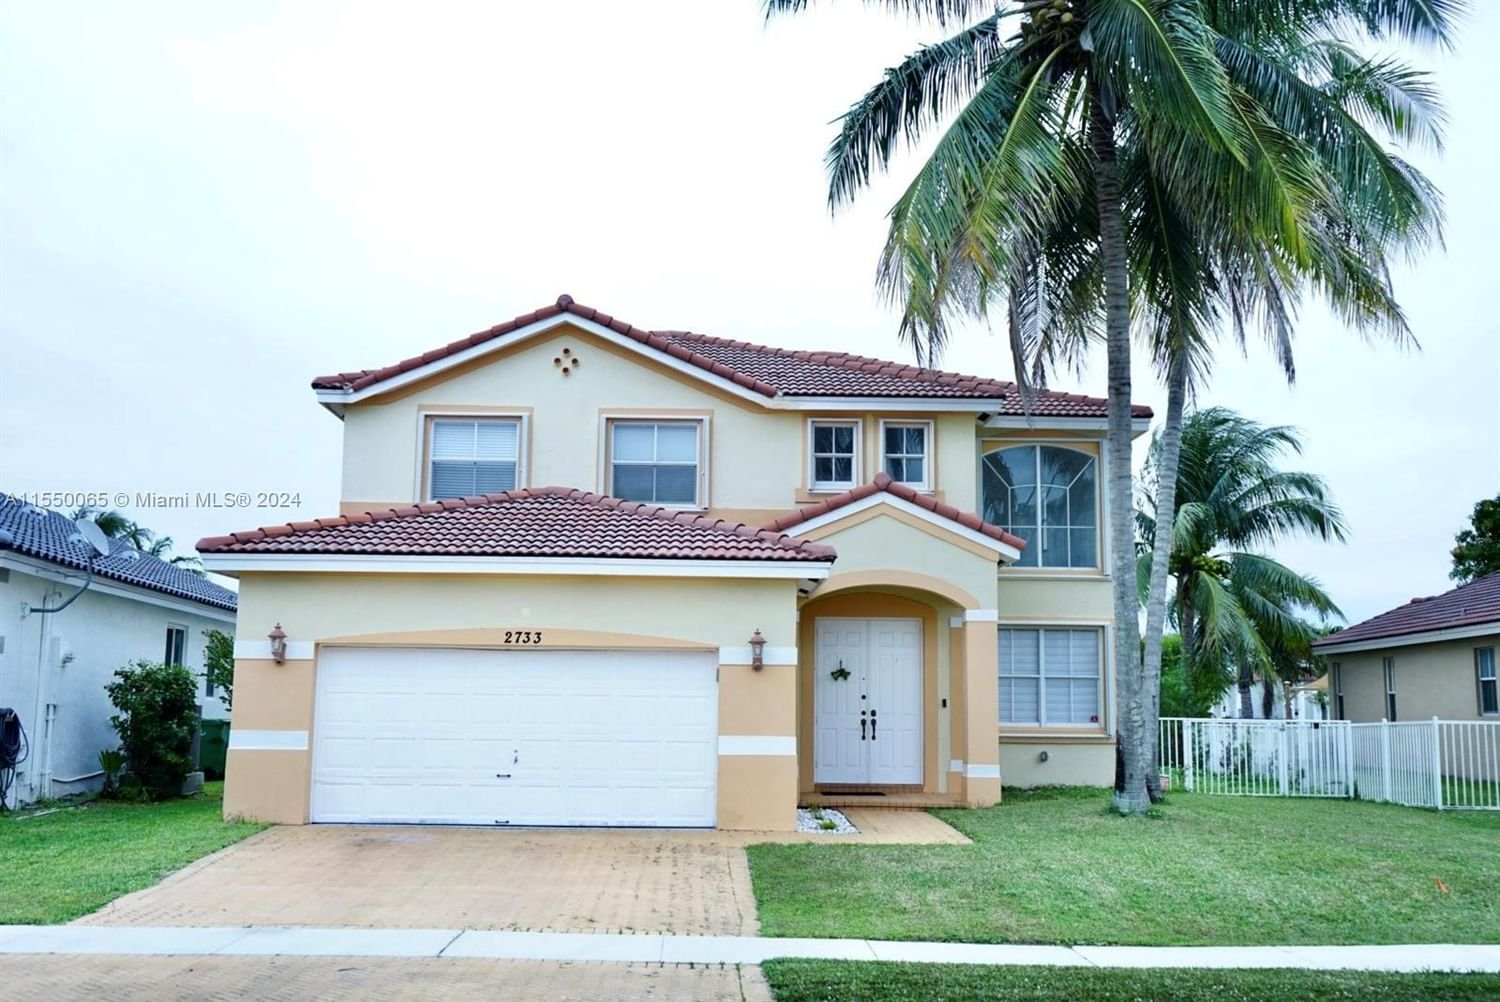 Real estate property located at 2733 129th Ter, Broward County, POD 6 AT MONARCH LAKES, Miramar, FL